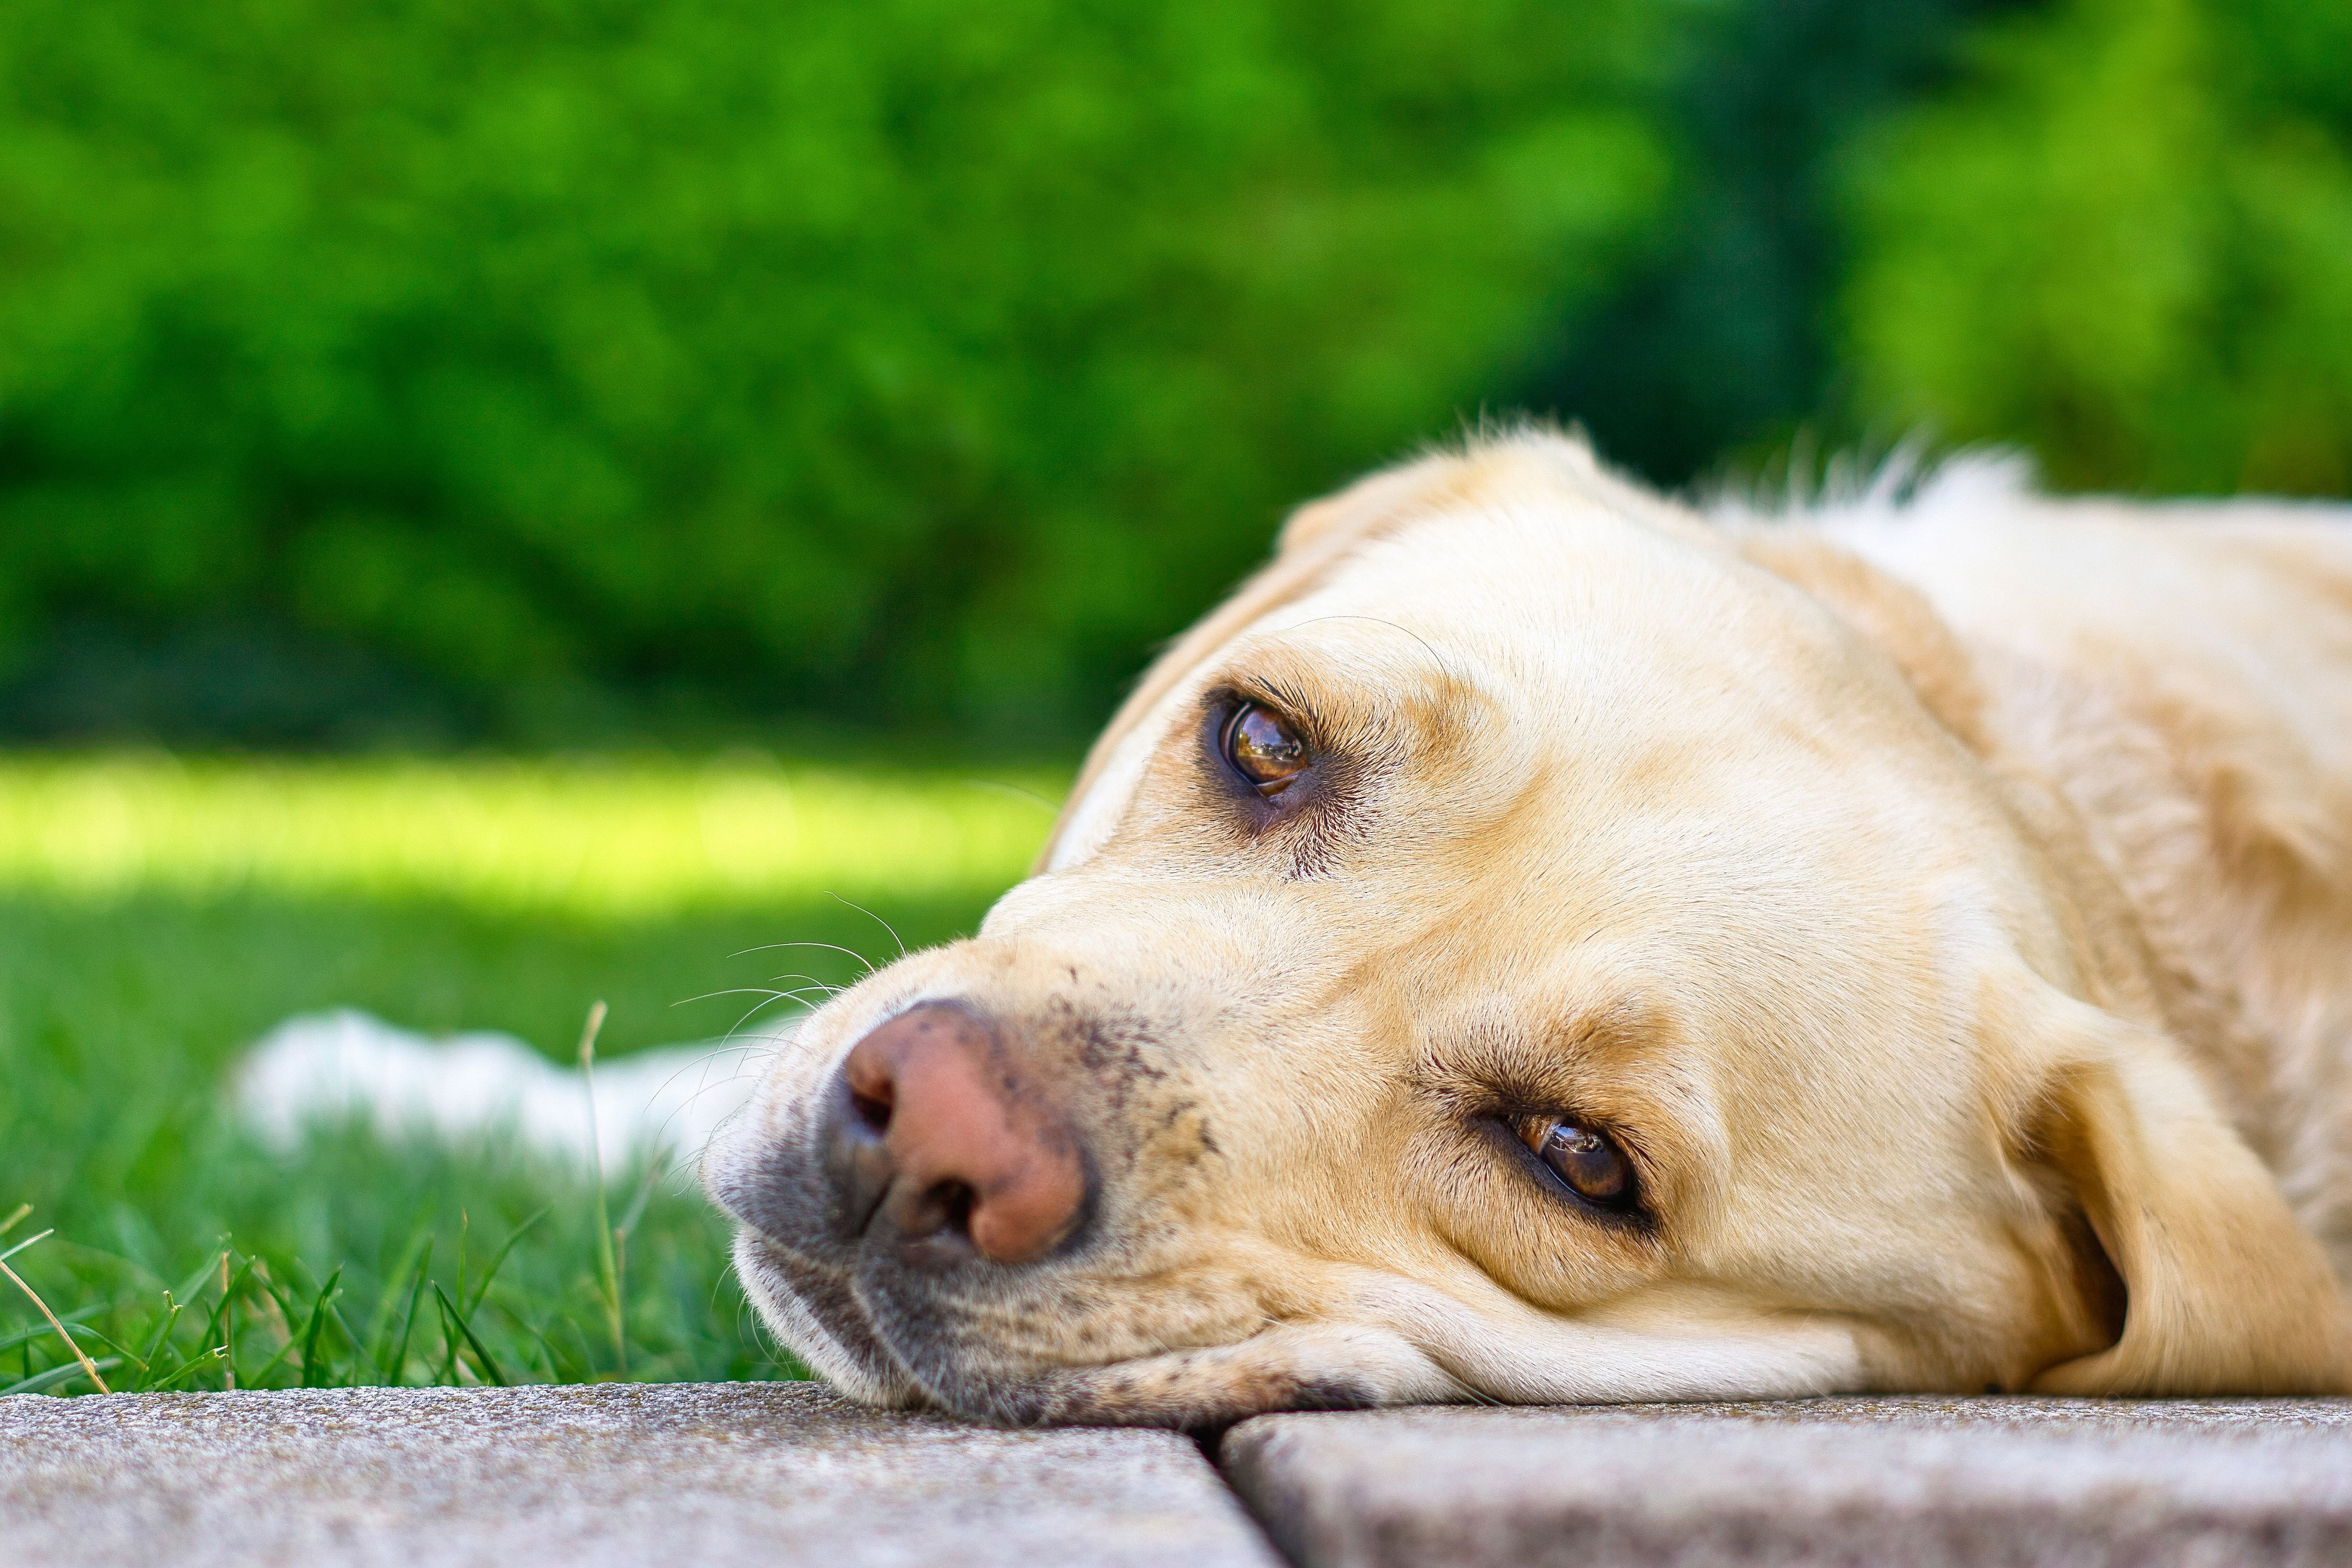 Diarrea, calvas, ojos llorosos… ¿Es alérgico mi perro?